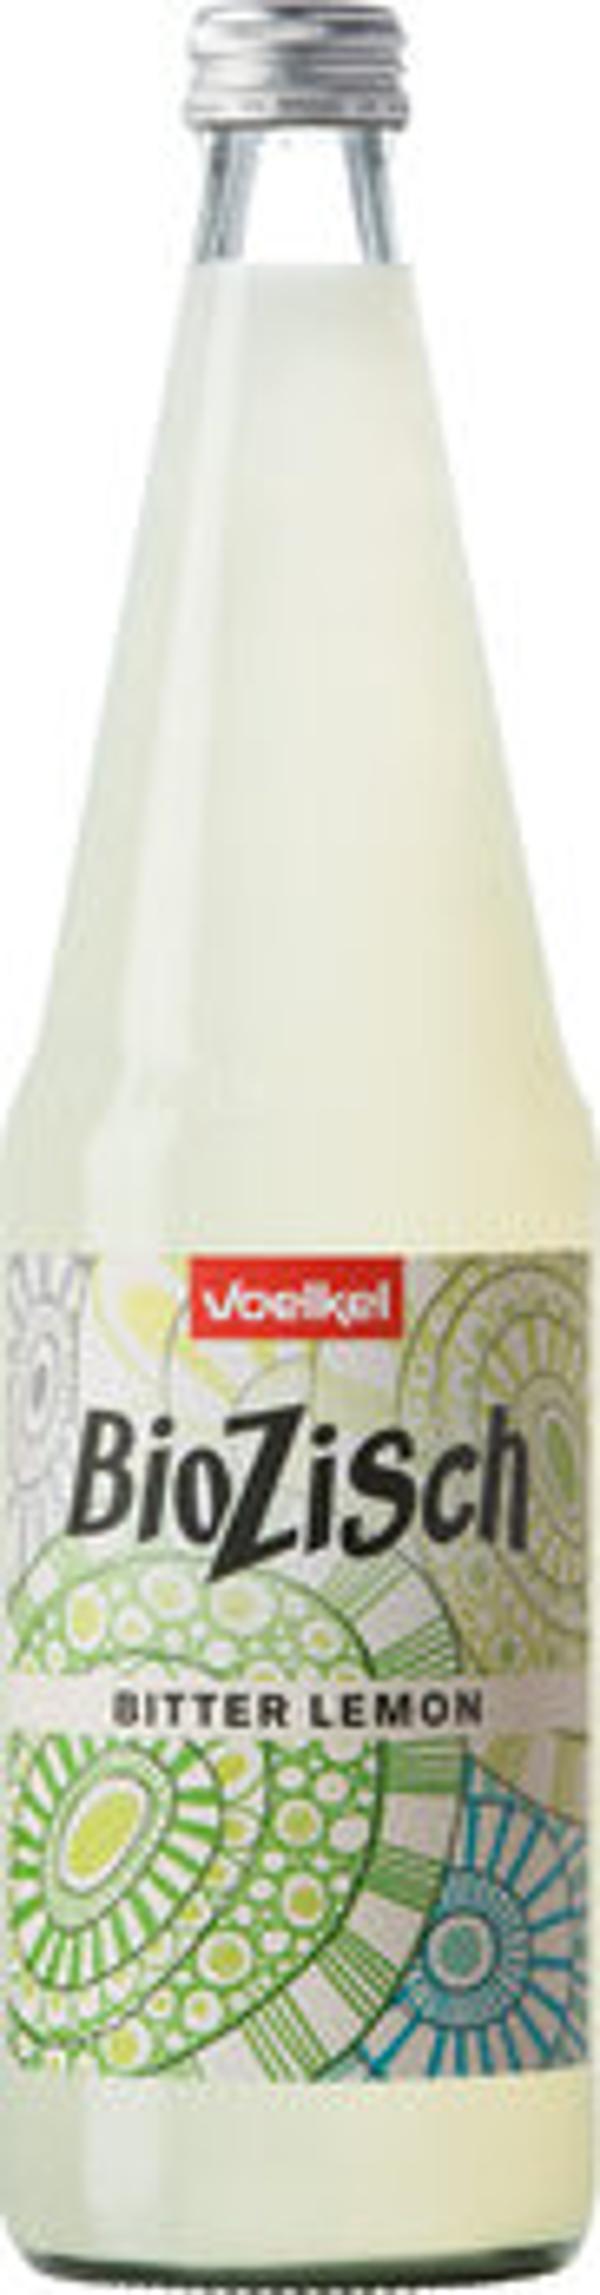 Produktfoto zu Voelkel Bio Zisch Bitter-Lemon 0,7l